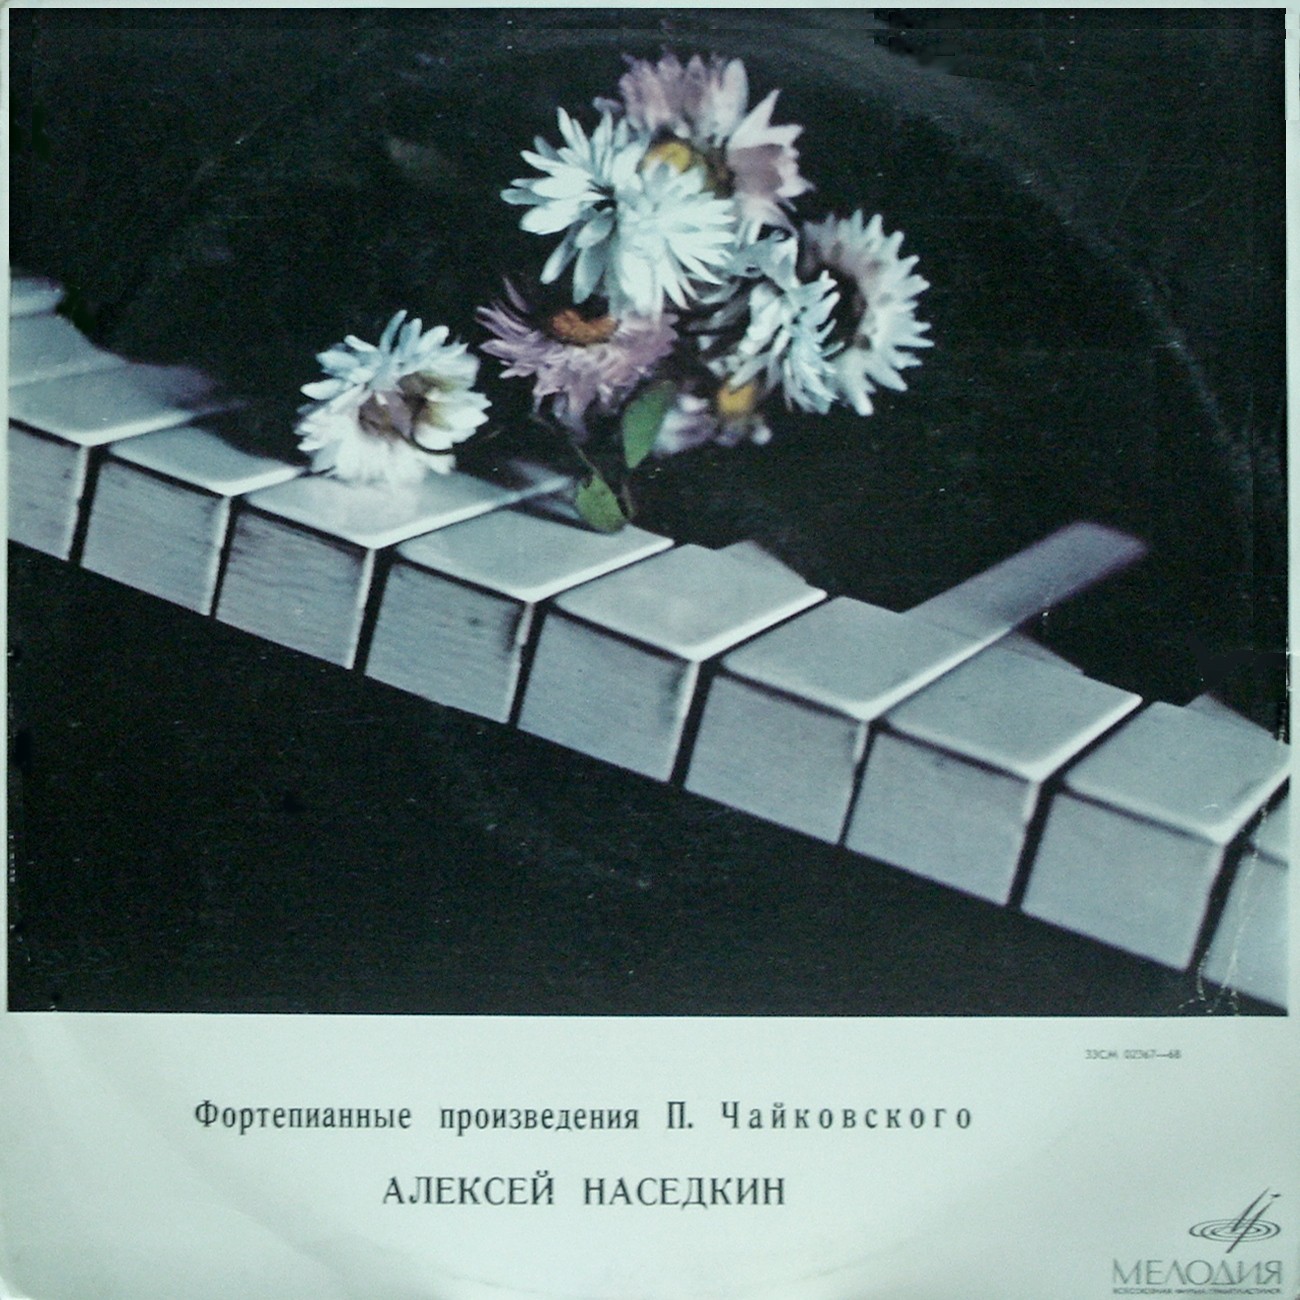 Алексей НАСЕДКИН (фортепиано): «Фортепианные произведения П. Чайковского»